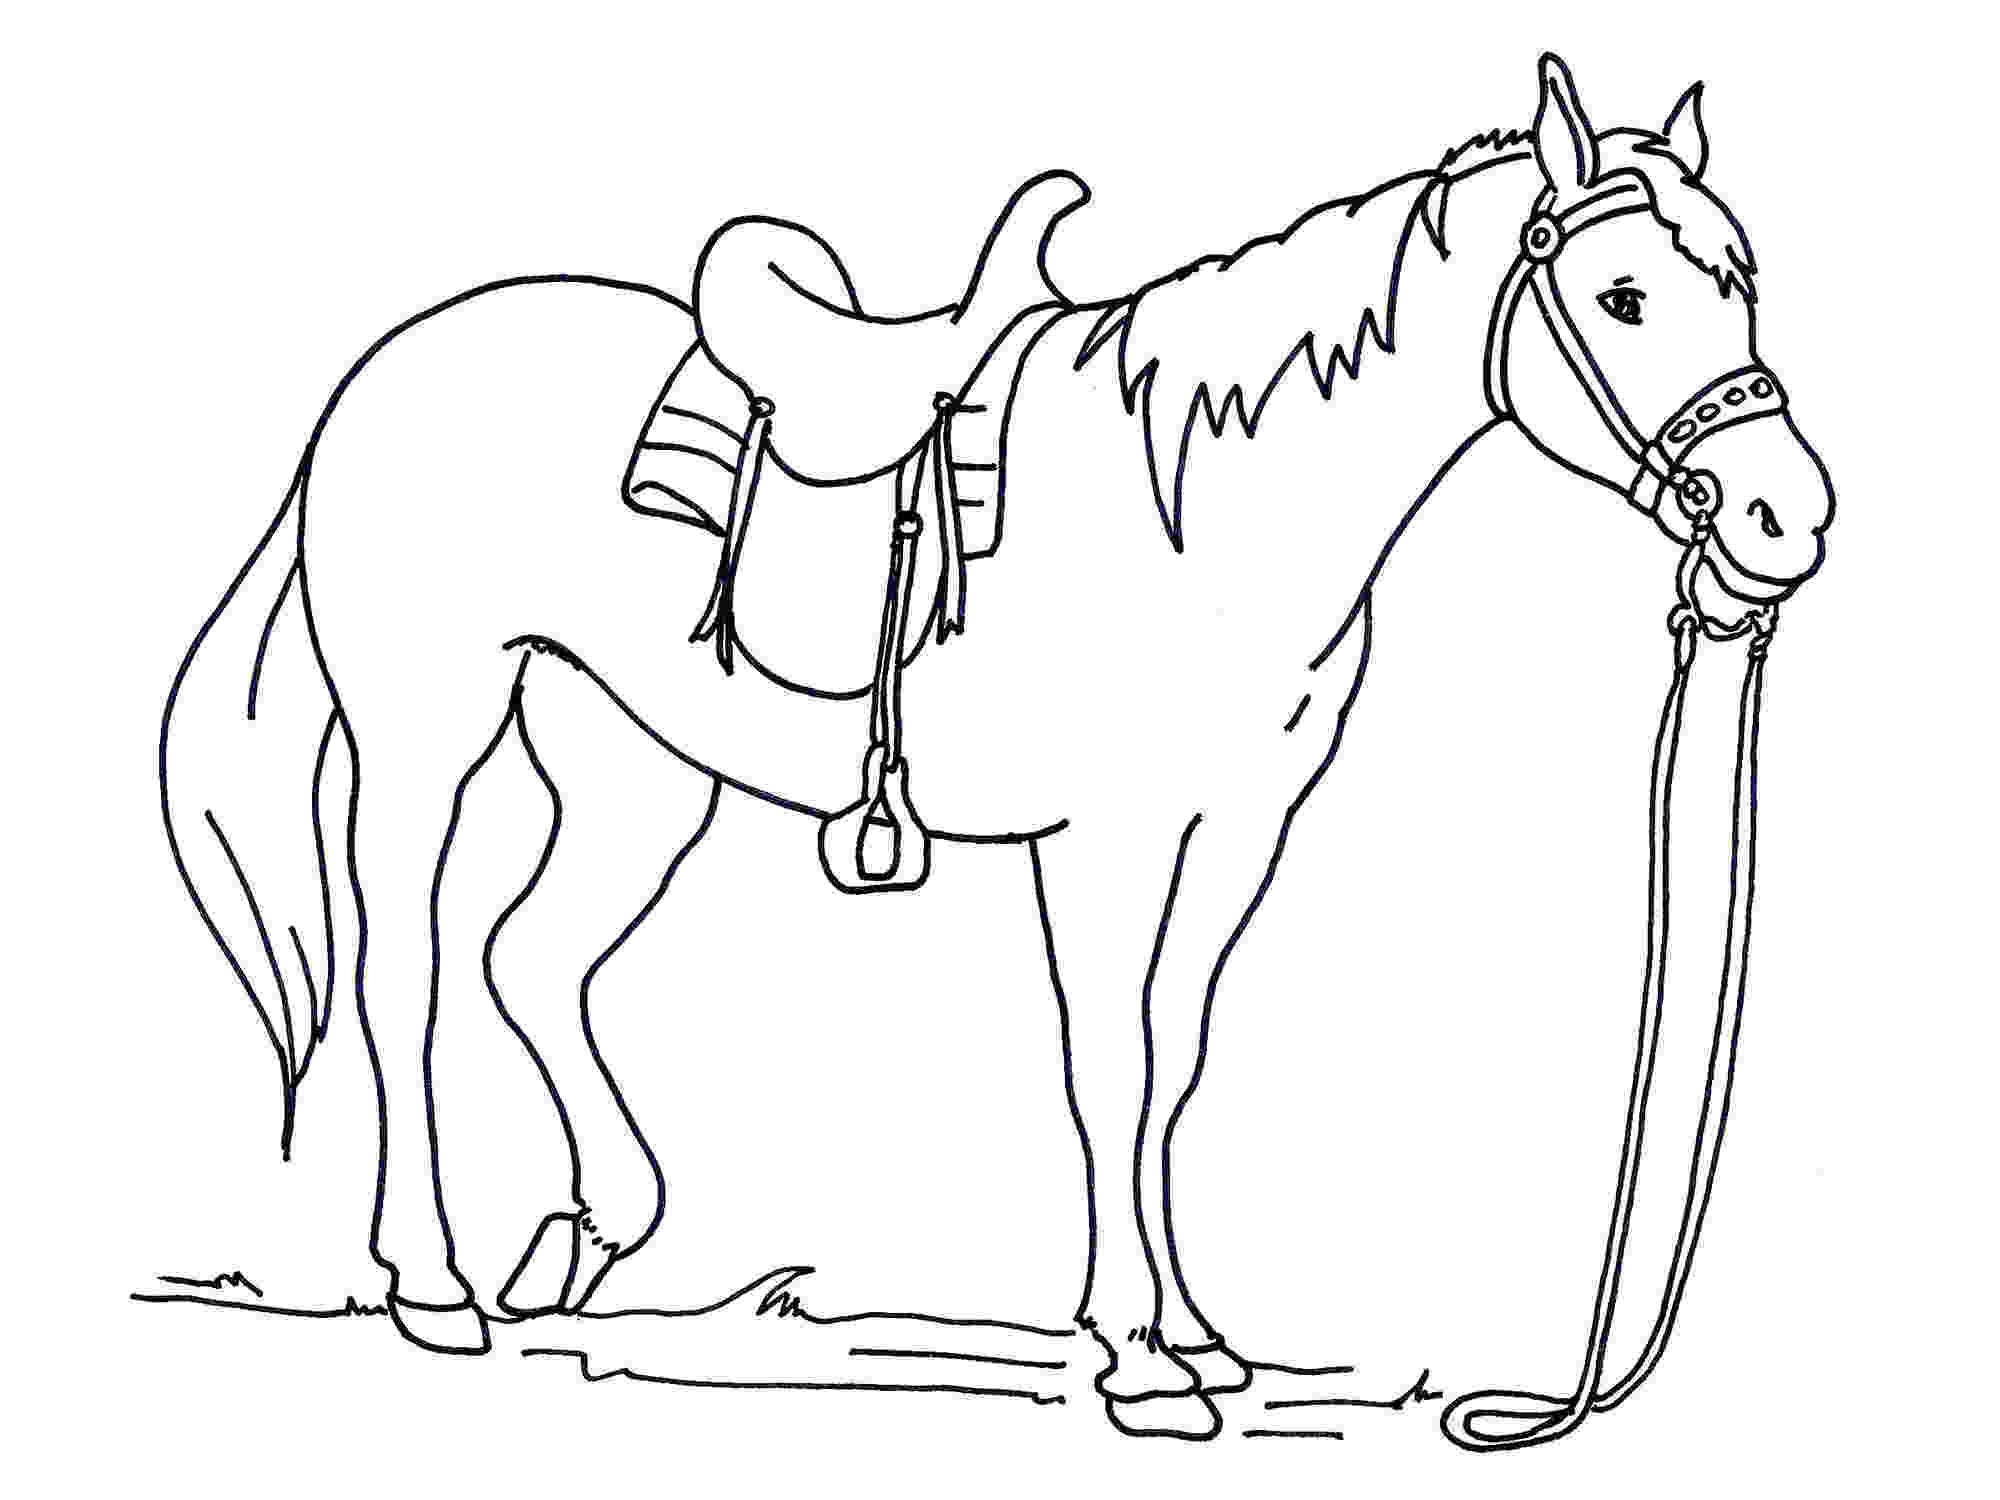 Cách vẽ con cái ngựa giản dị và đơn giản đẹp tuyệt vời nhất giành riêng cho nhỏ nhắn [Mẫu hình vẽ ngựa]